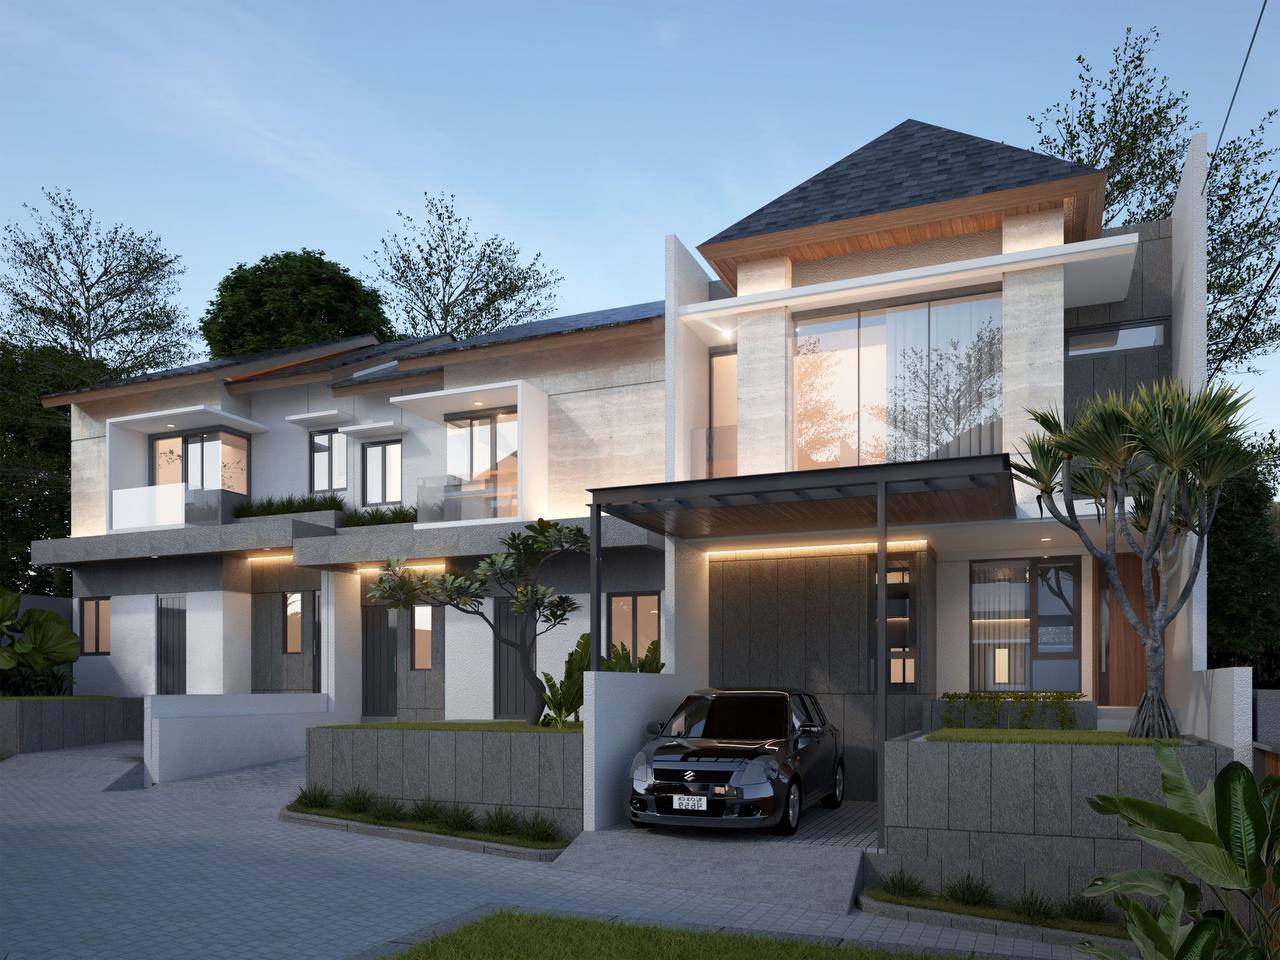 Rumah Mewah Bogor Siap Huni 3km dari Botani Square Mall Bogor